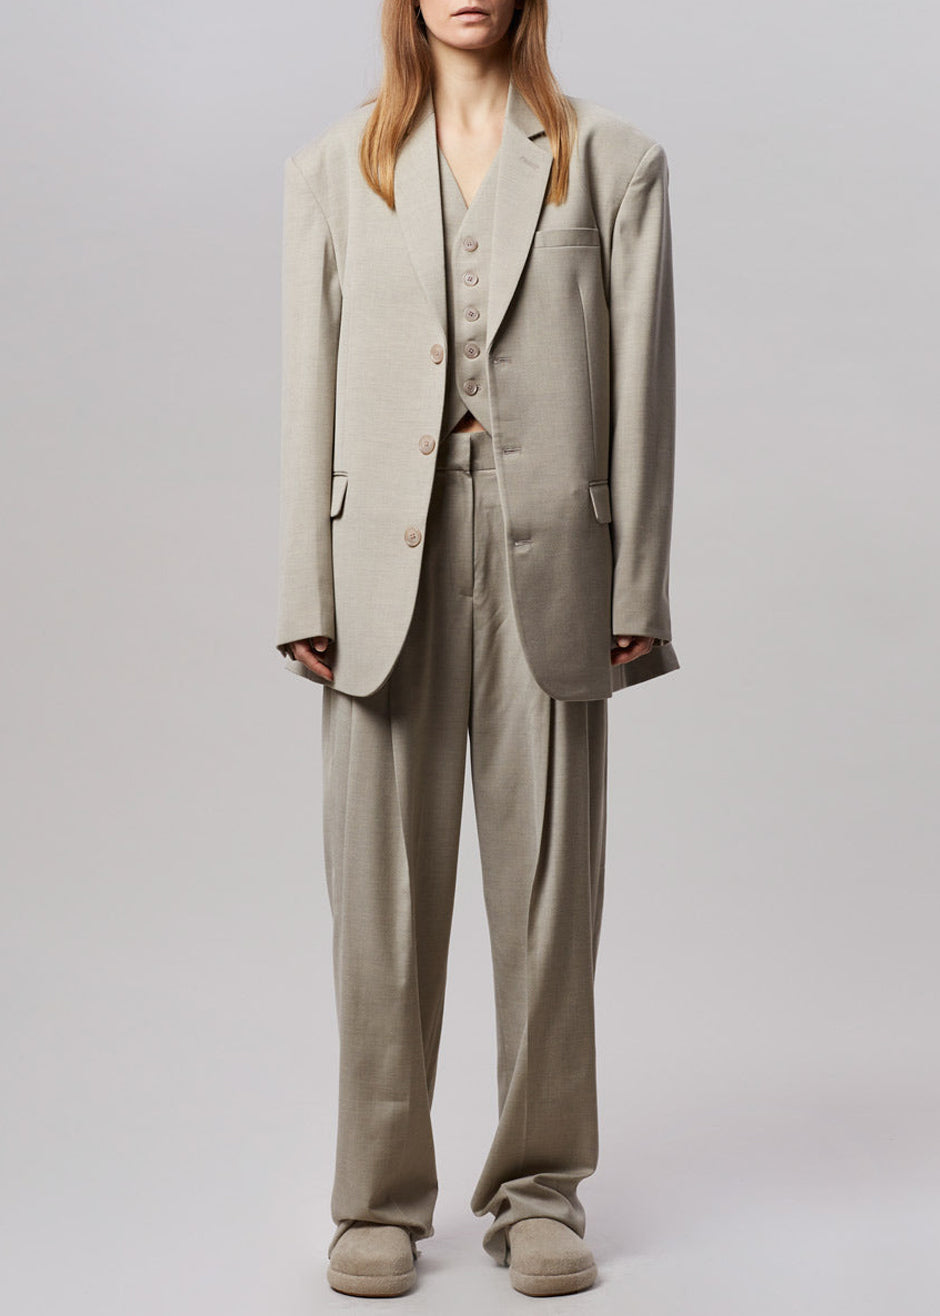 LeSuit Women's Petite Size 3 Button Melange Accordian Jacket with Pant |  Suits for women, Mens outfits, Suits